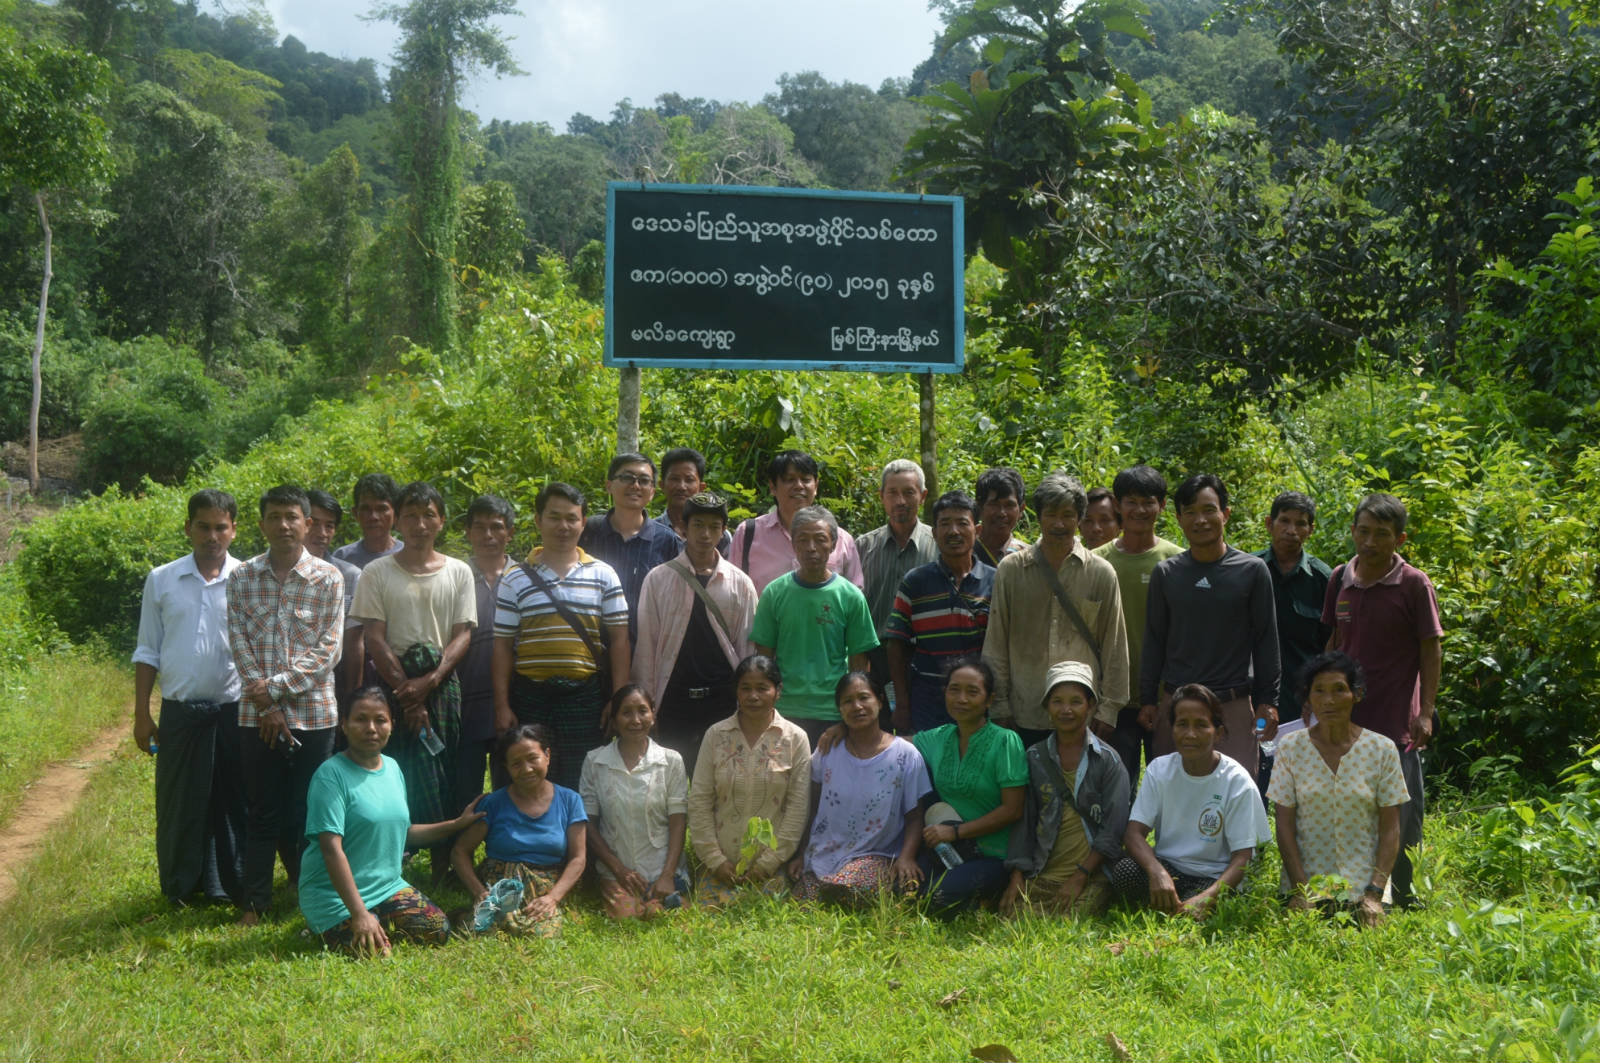 作者（後排左八）與緬甸當地社區森林小組成員合照